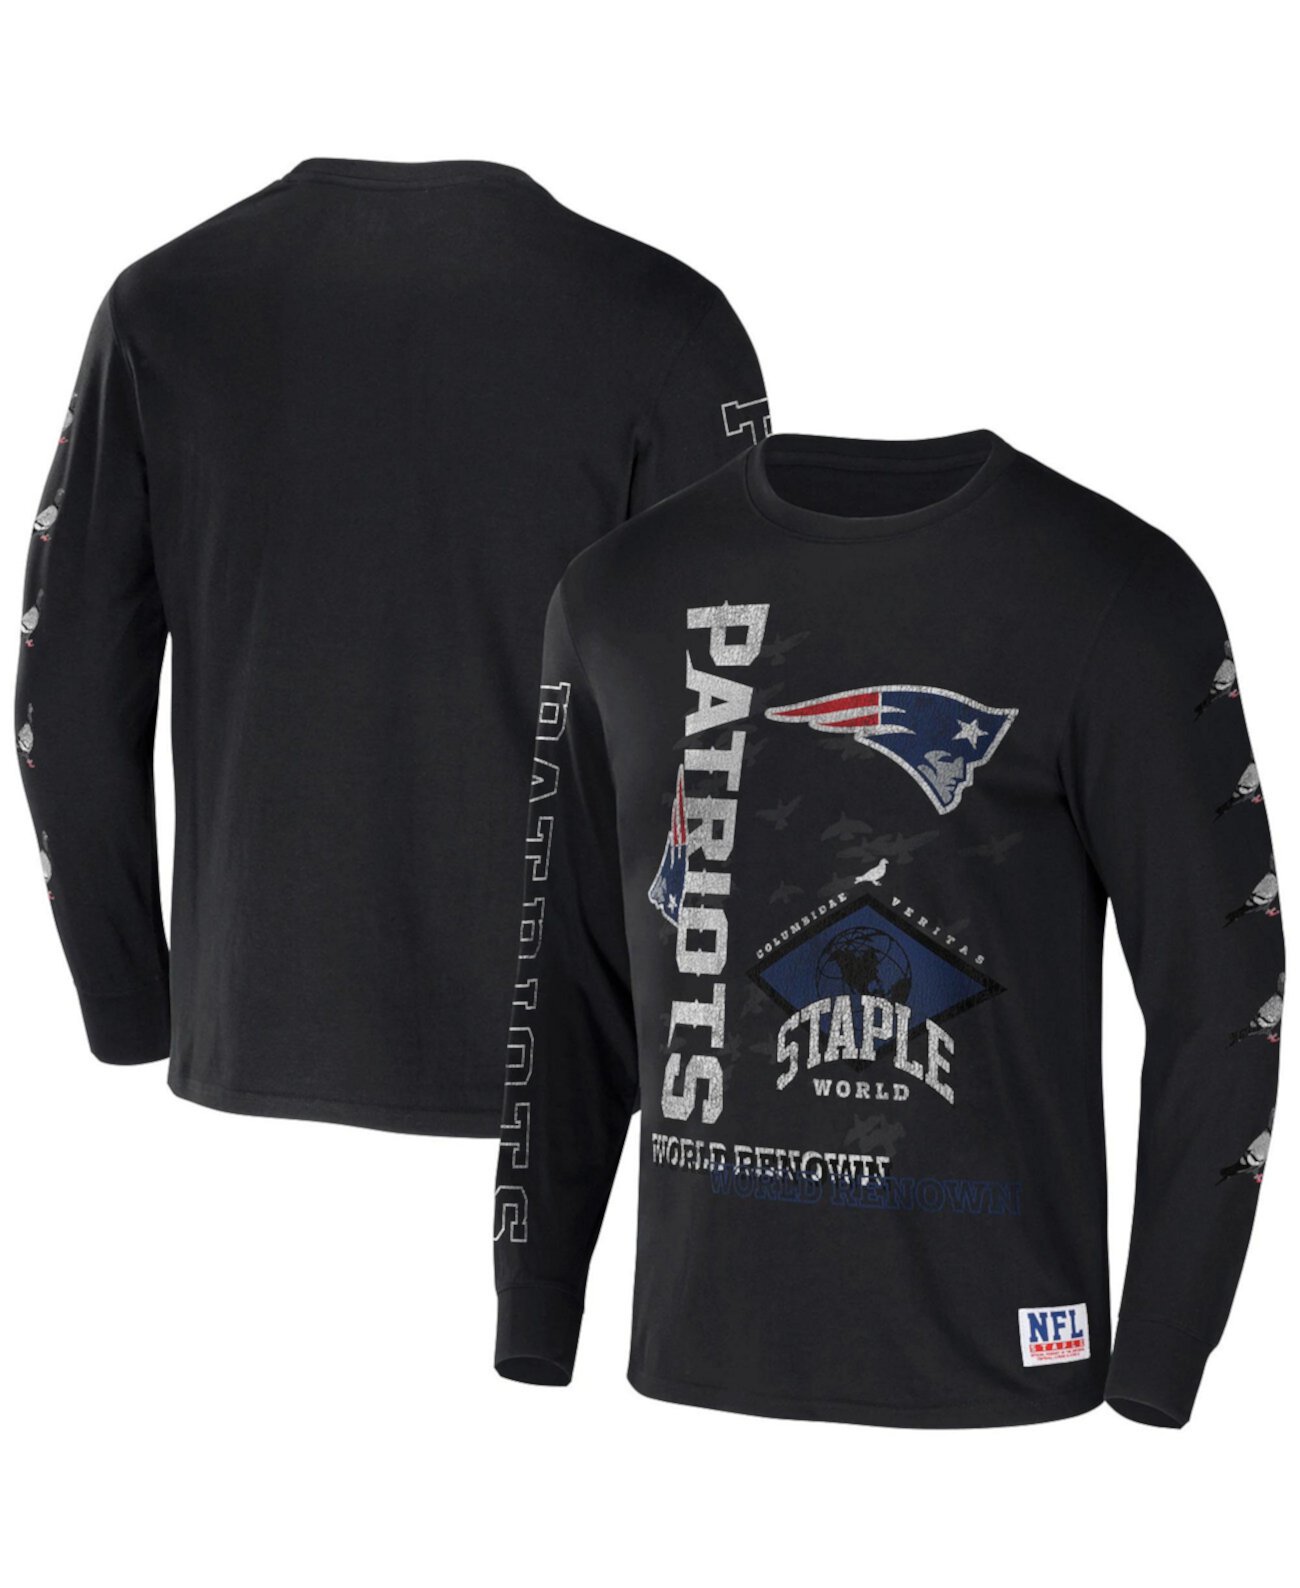 Мужская футболка NFL X Staple Black New England Patriots с длинным рукавом с мировым именем NFL